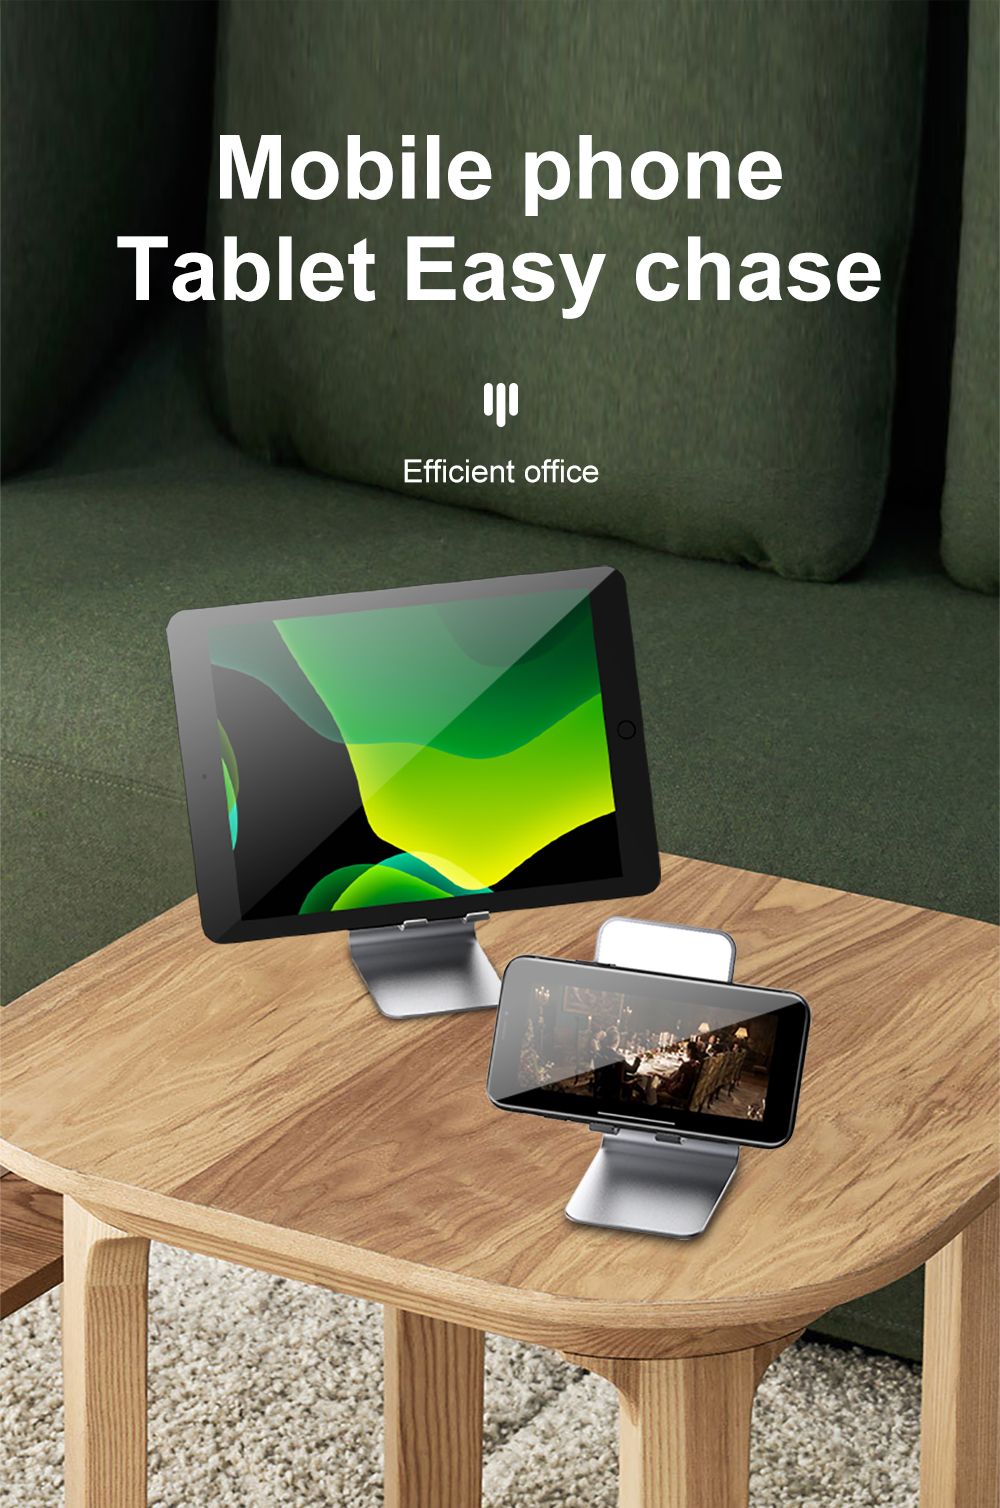 R-JUST-Foldable-Desktop-Metal-Holder-Bracket-Live-Mirror-Stand-for-Tablet-Smartphone-1677113